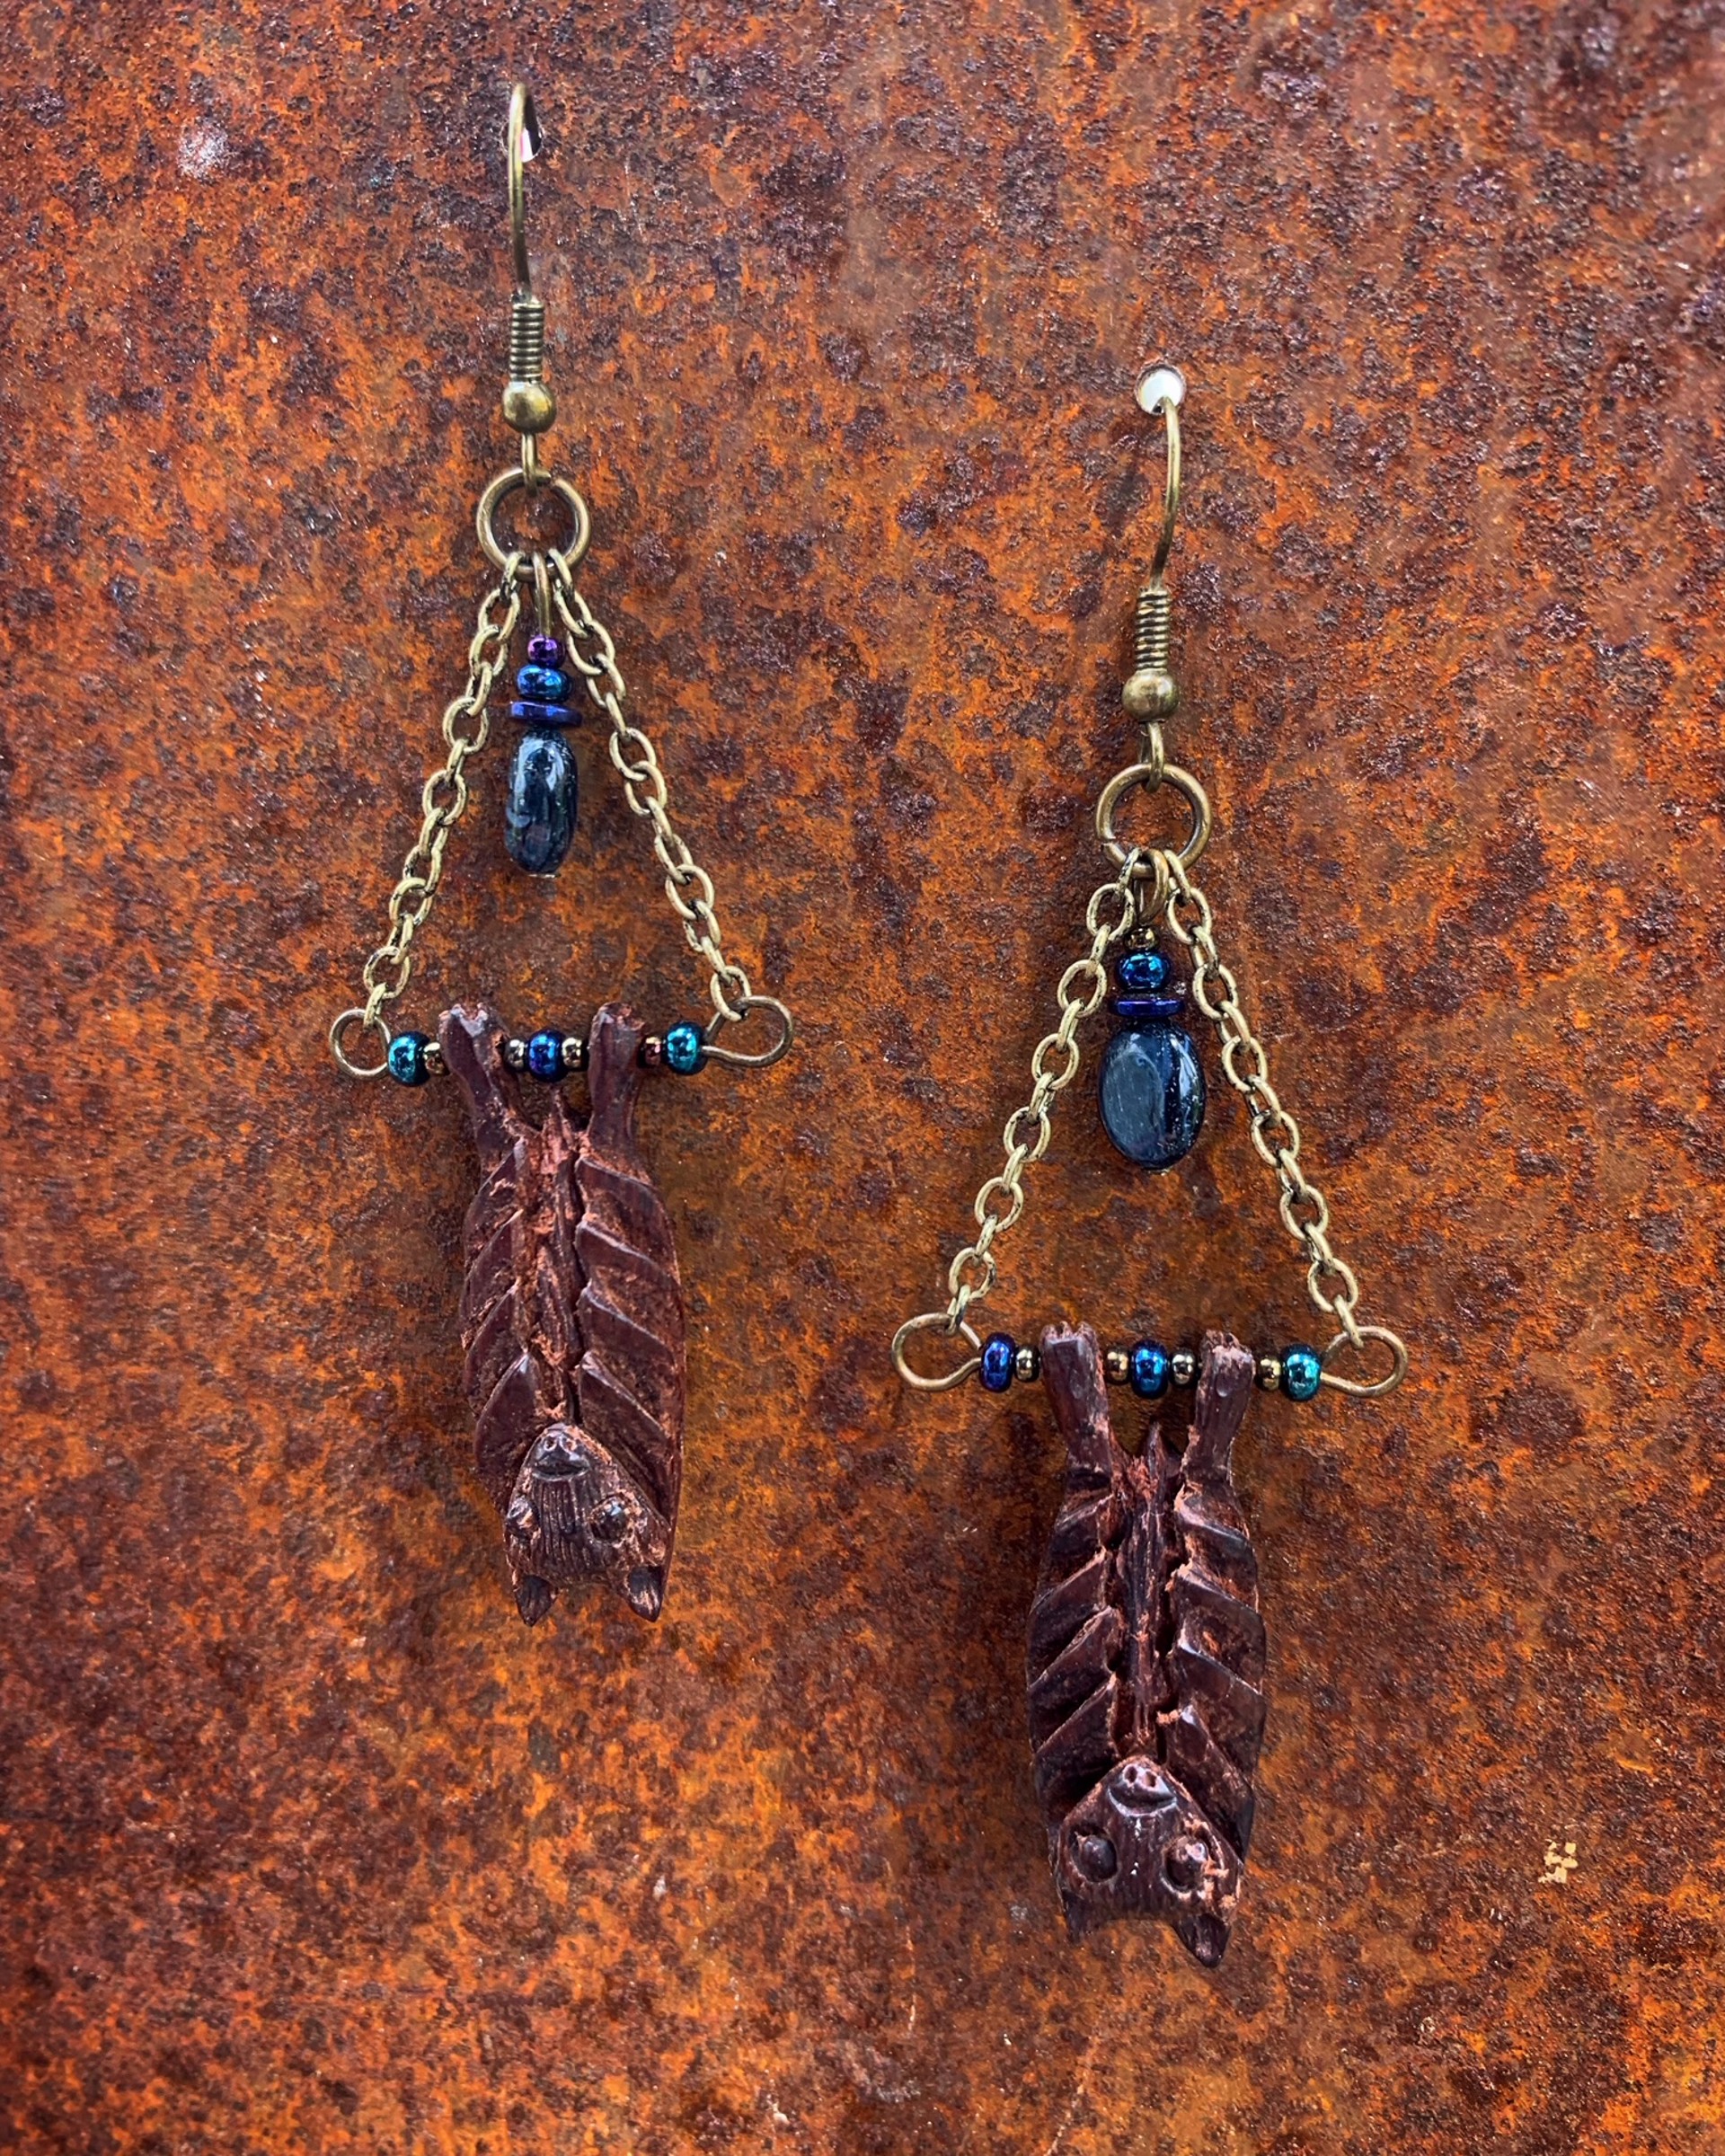 827 Sono Wood Bat Earrings by Kelly Ormsby